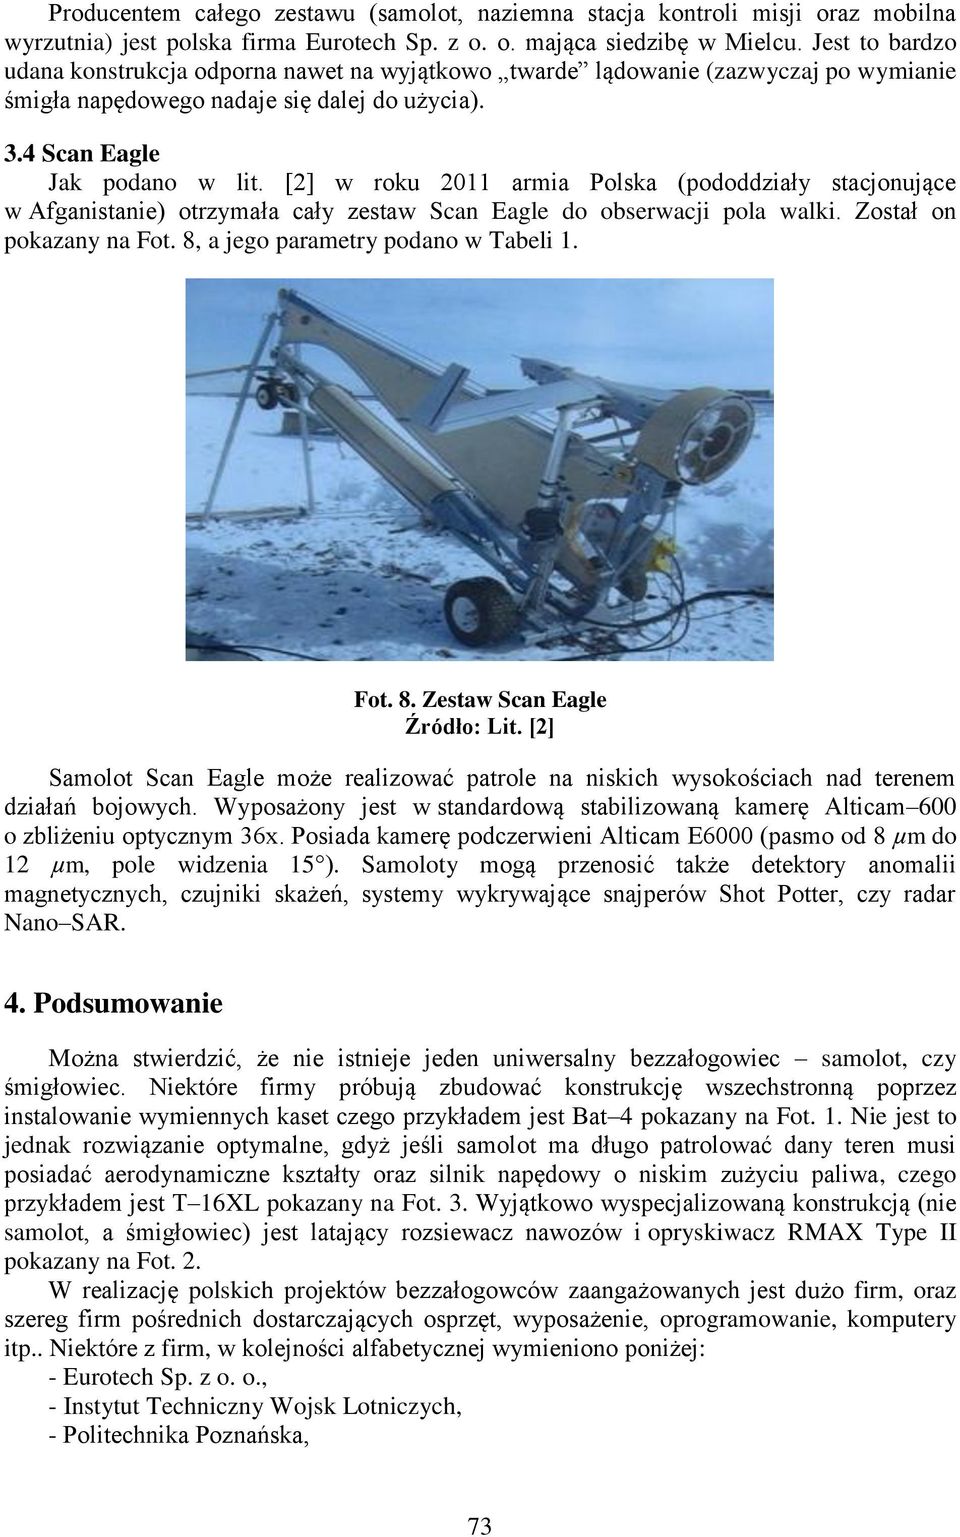 [2] w roku 2011 armia Polska (pododdziały stacjonujące w Afganistanie) otrzymała cały zestaw Scan Eagle do obserwacji pola walki. Został on pokazany na Fot. 8, a jego parametry podano w Tabeli 1. Fot. 8. Zestaw Scan Eagle Źródło: Lit.